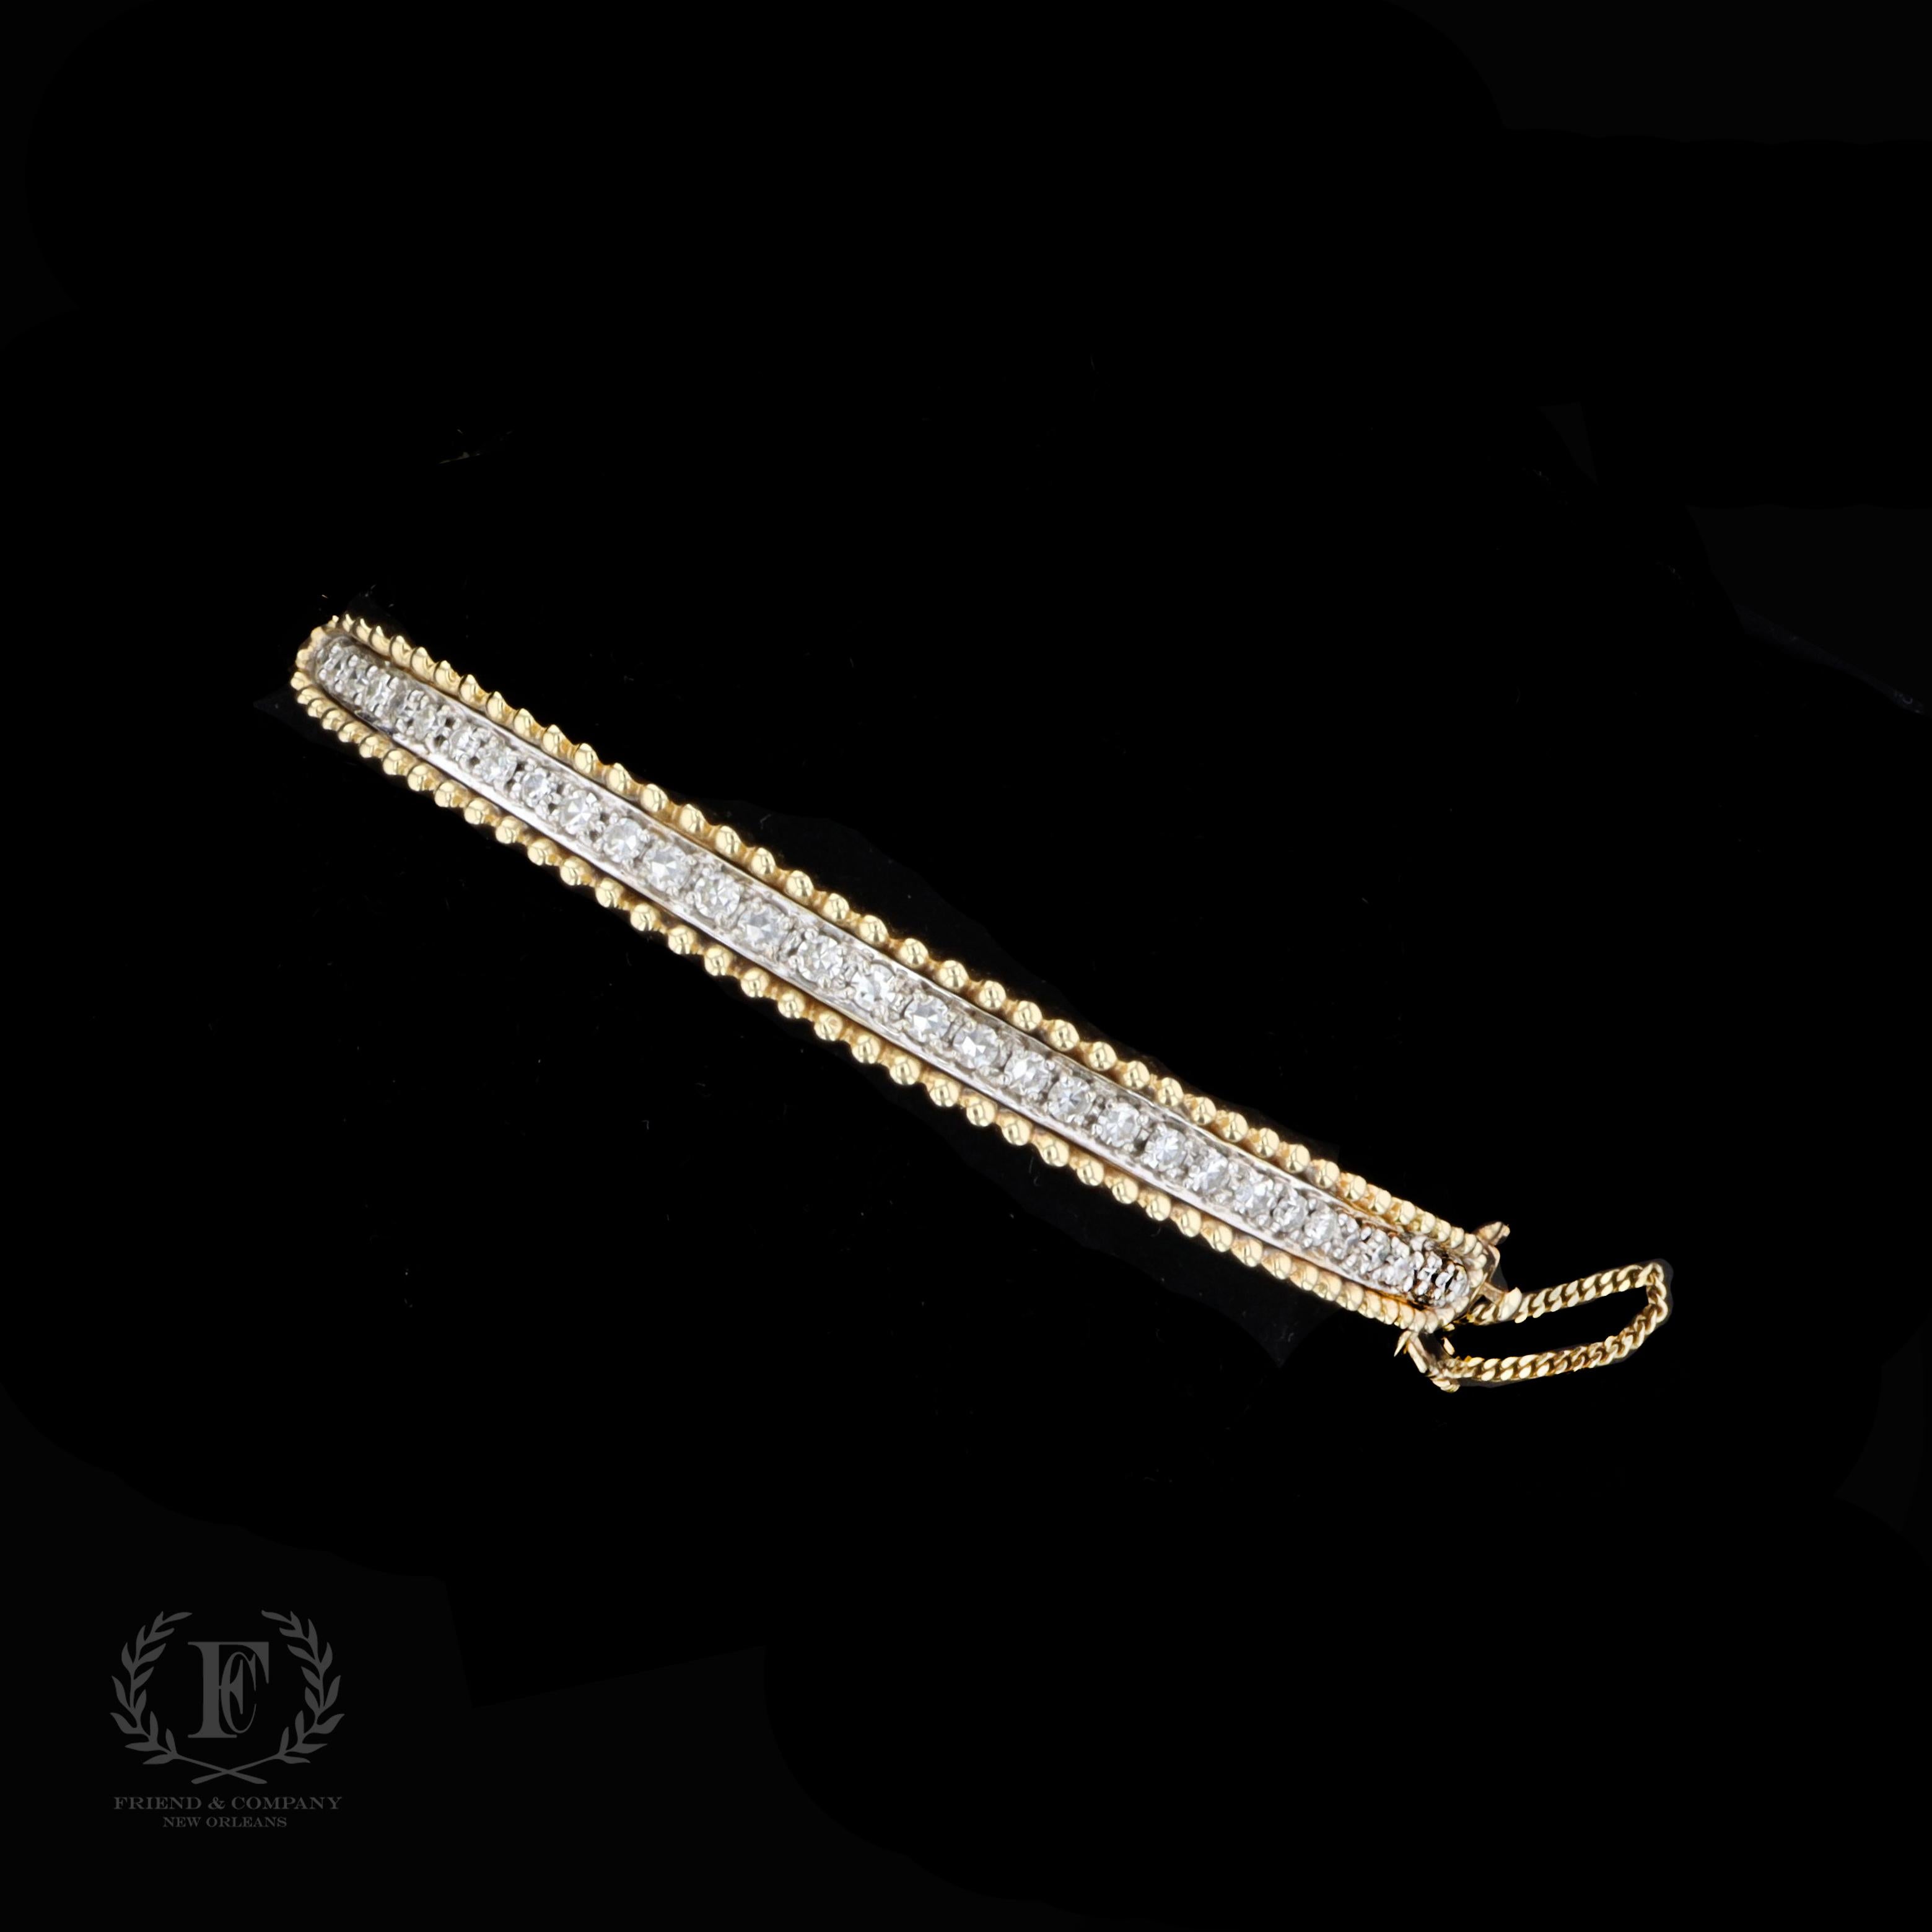 Le bracelet est serti de diamants ronds pesant environ 1.65 carat. La couleur des diamants est G et la pureté VS. Le bracelet mesure 6 millimètres de largeur à la base la plus large et convient à un poignet de taille standard. Le bracelet est